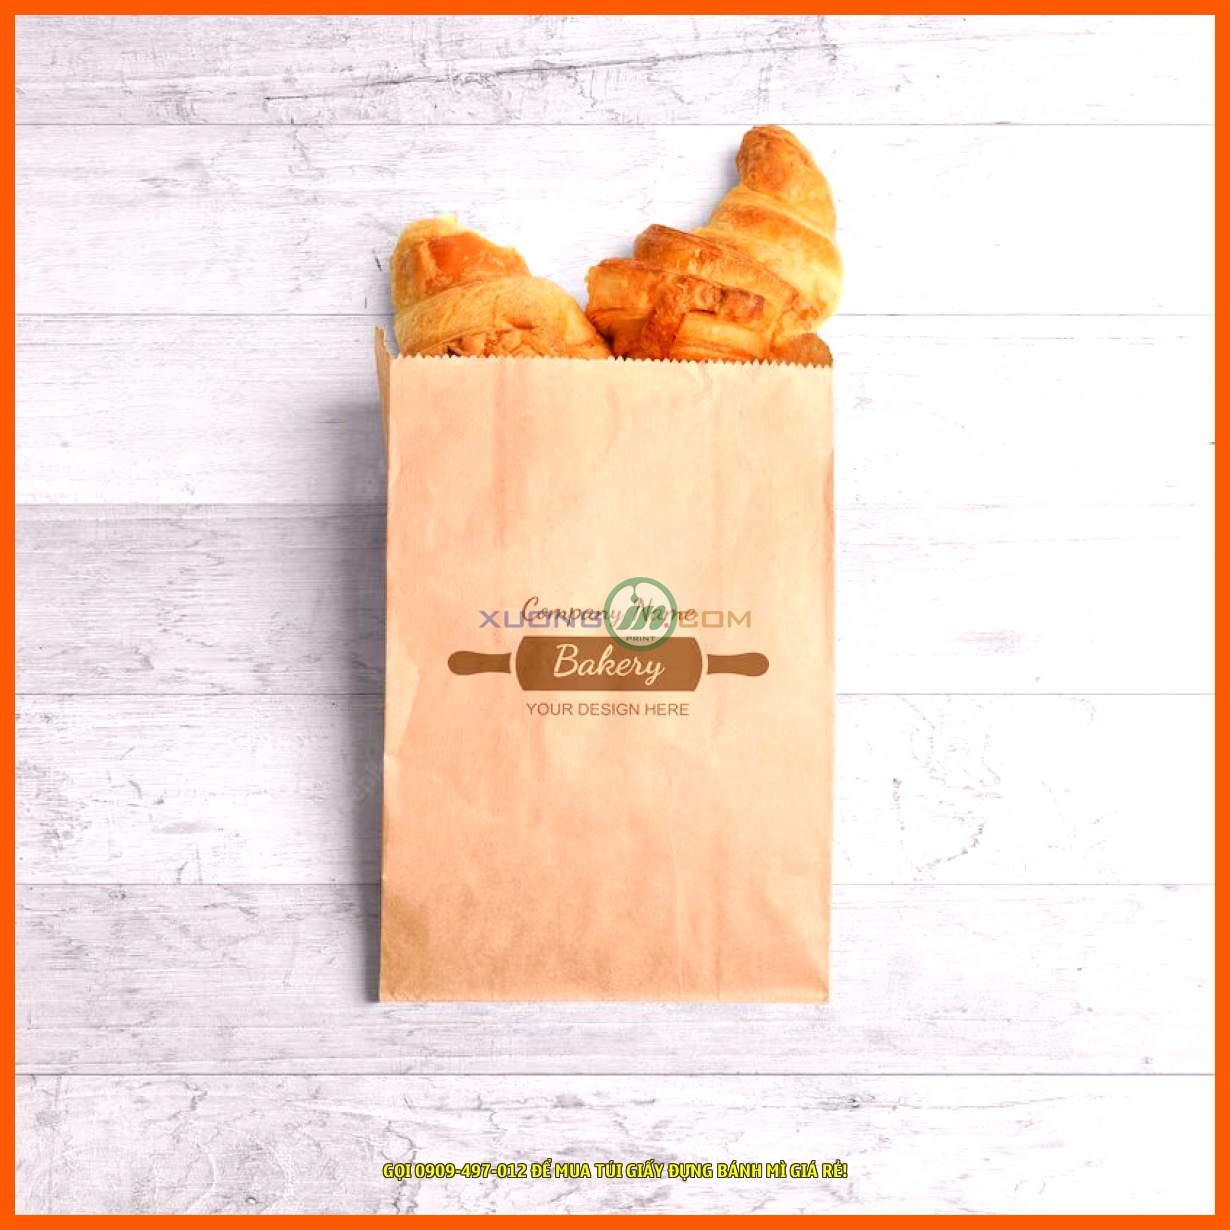 Công ty bao bì Gia Phan cung cấp các loại túi giấy đựng bánh mì với nhiều kích thước và thiết kế khác nhau.